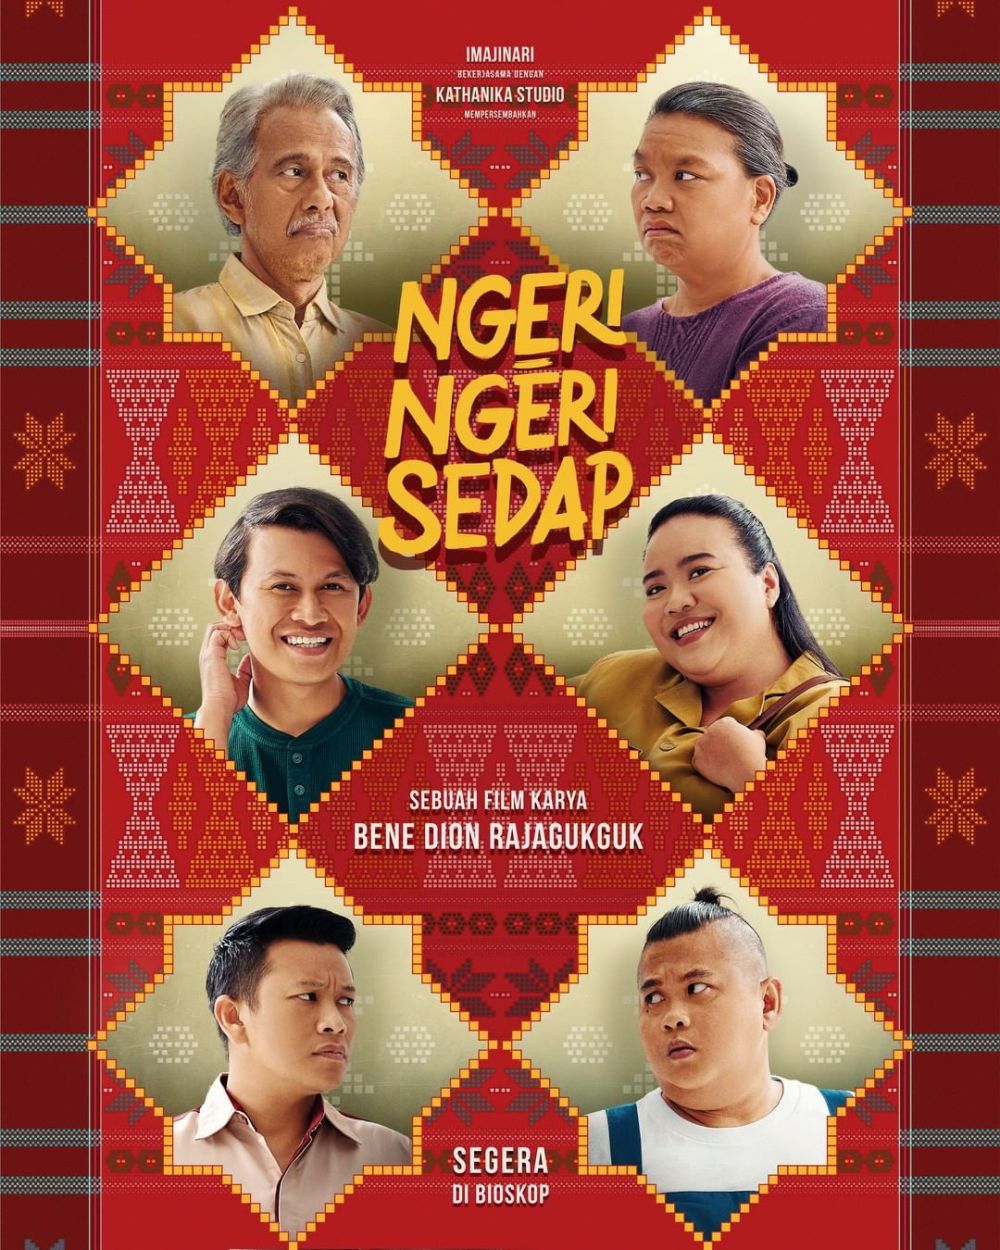 9 Film Sedang dan Bakal Tayang di Bioskop Lampung Juni 2022